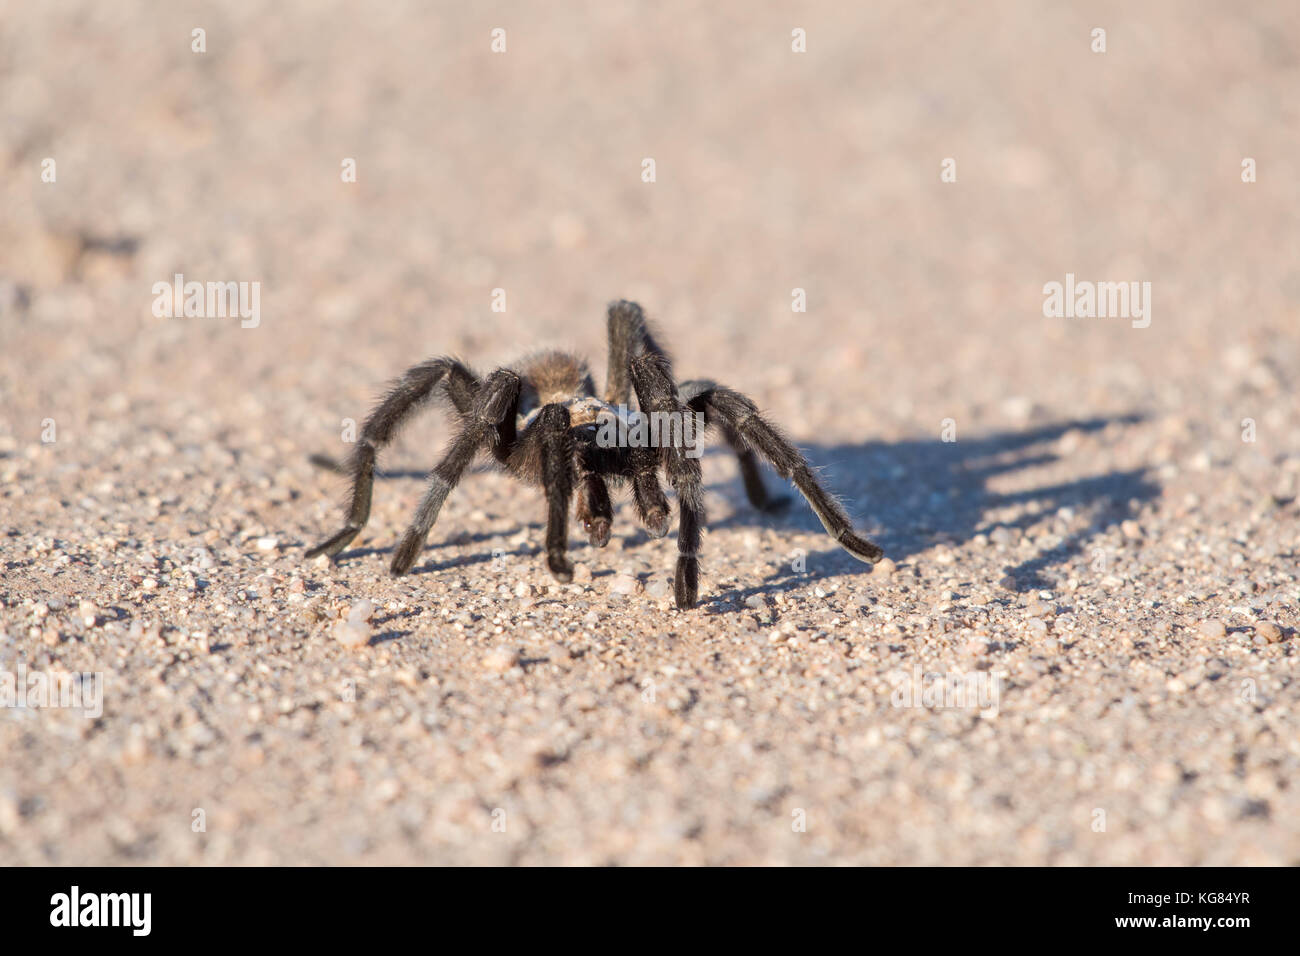 Tarantula, Socorro co., New Mexico, USA. Stock Photo